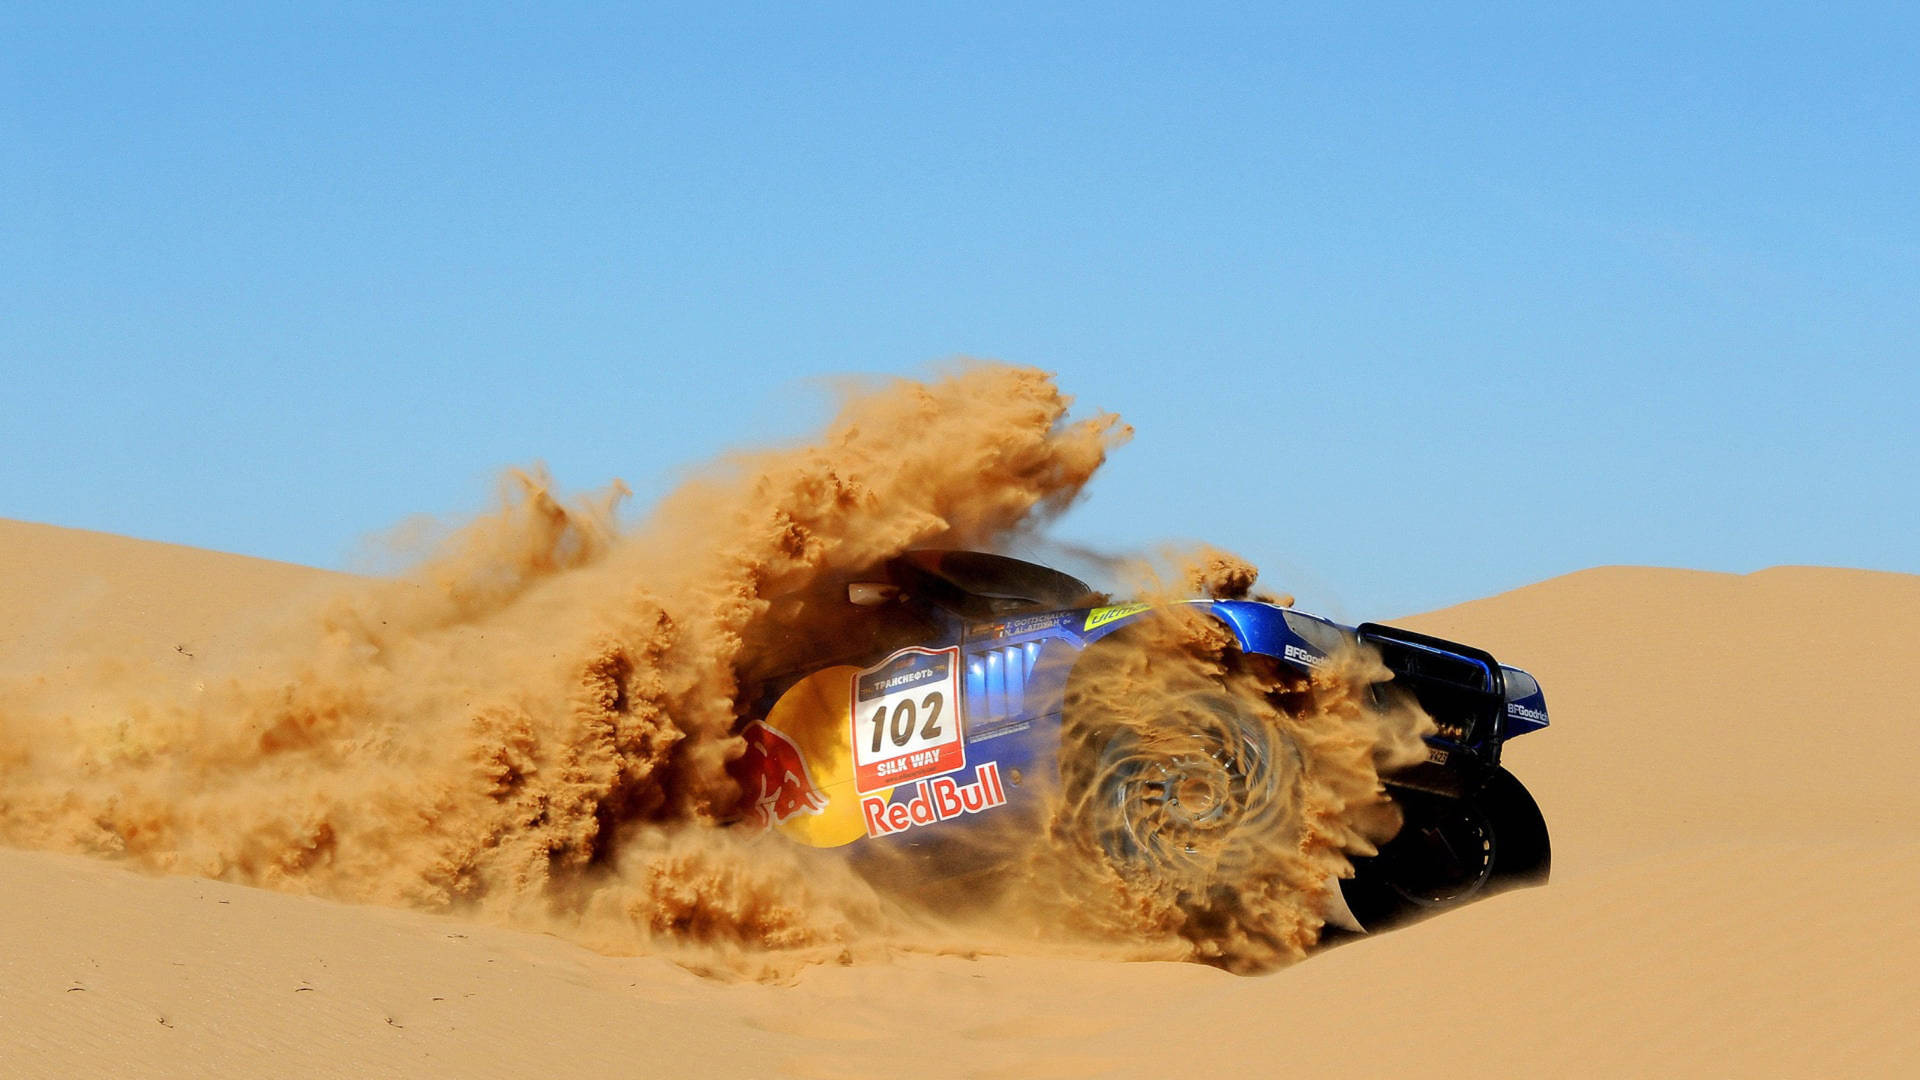 Red Bull Racing Car In Desert